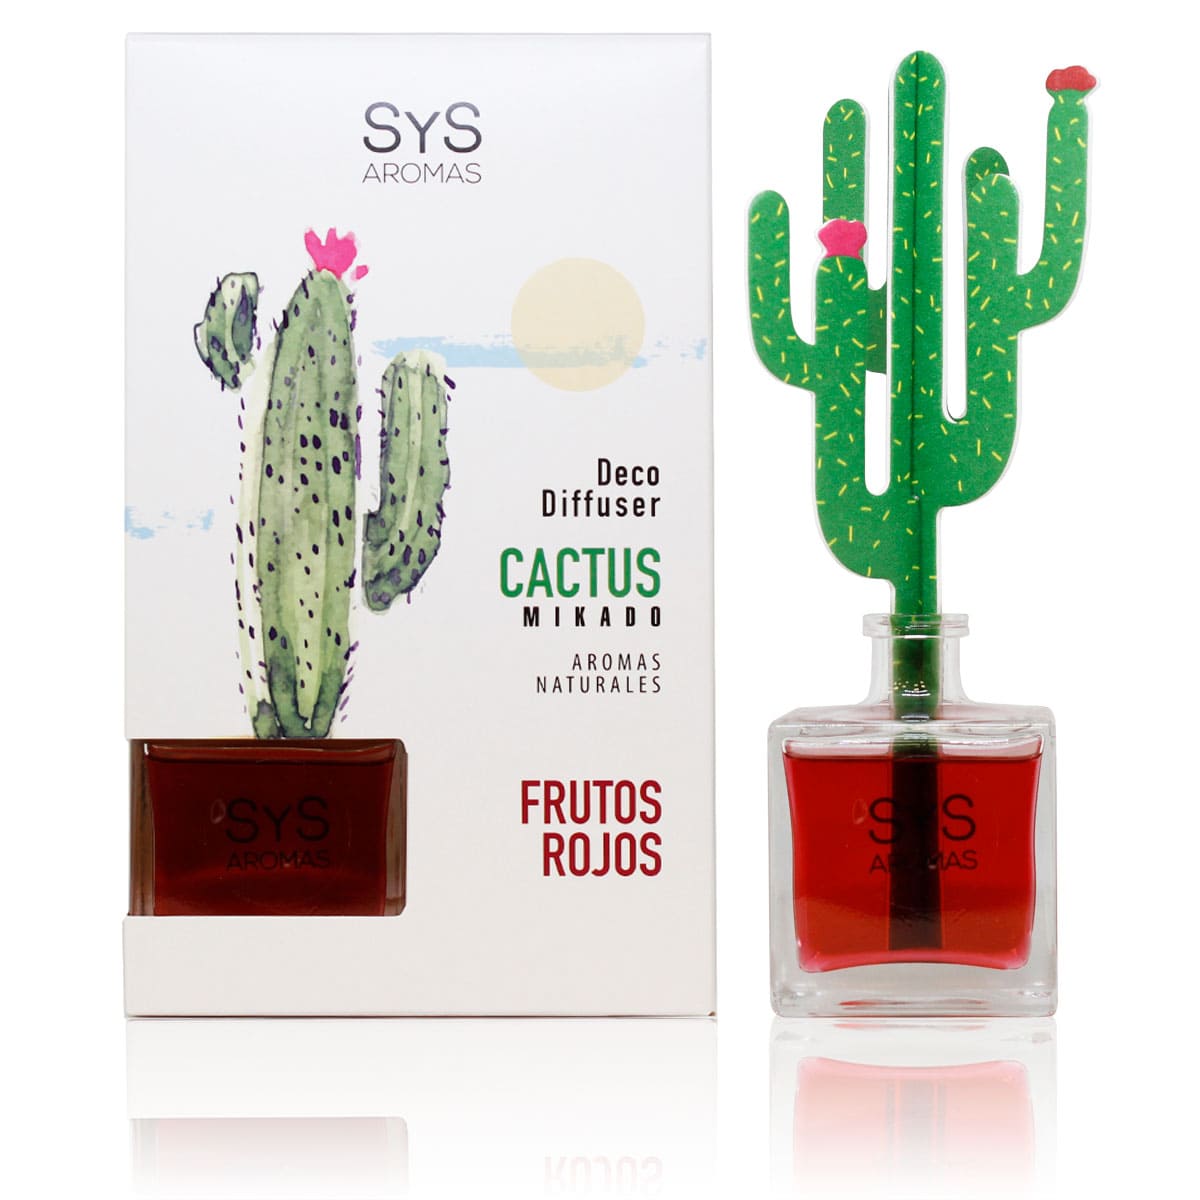 Buy Red Berries Cactus Diffuser Air Freshener 90ml SYS Aromas